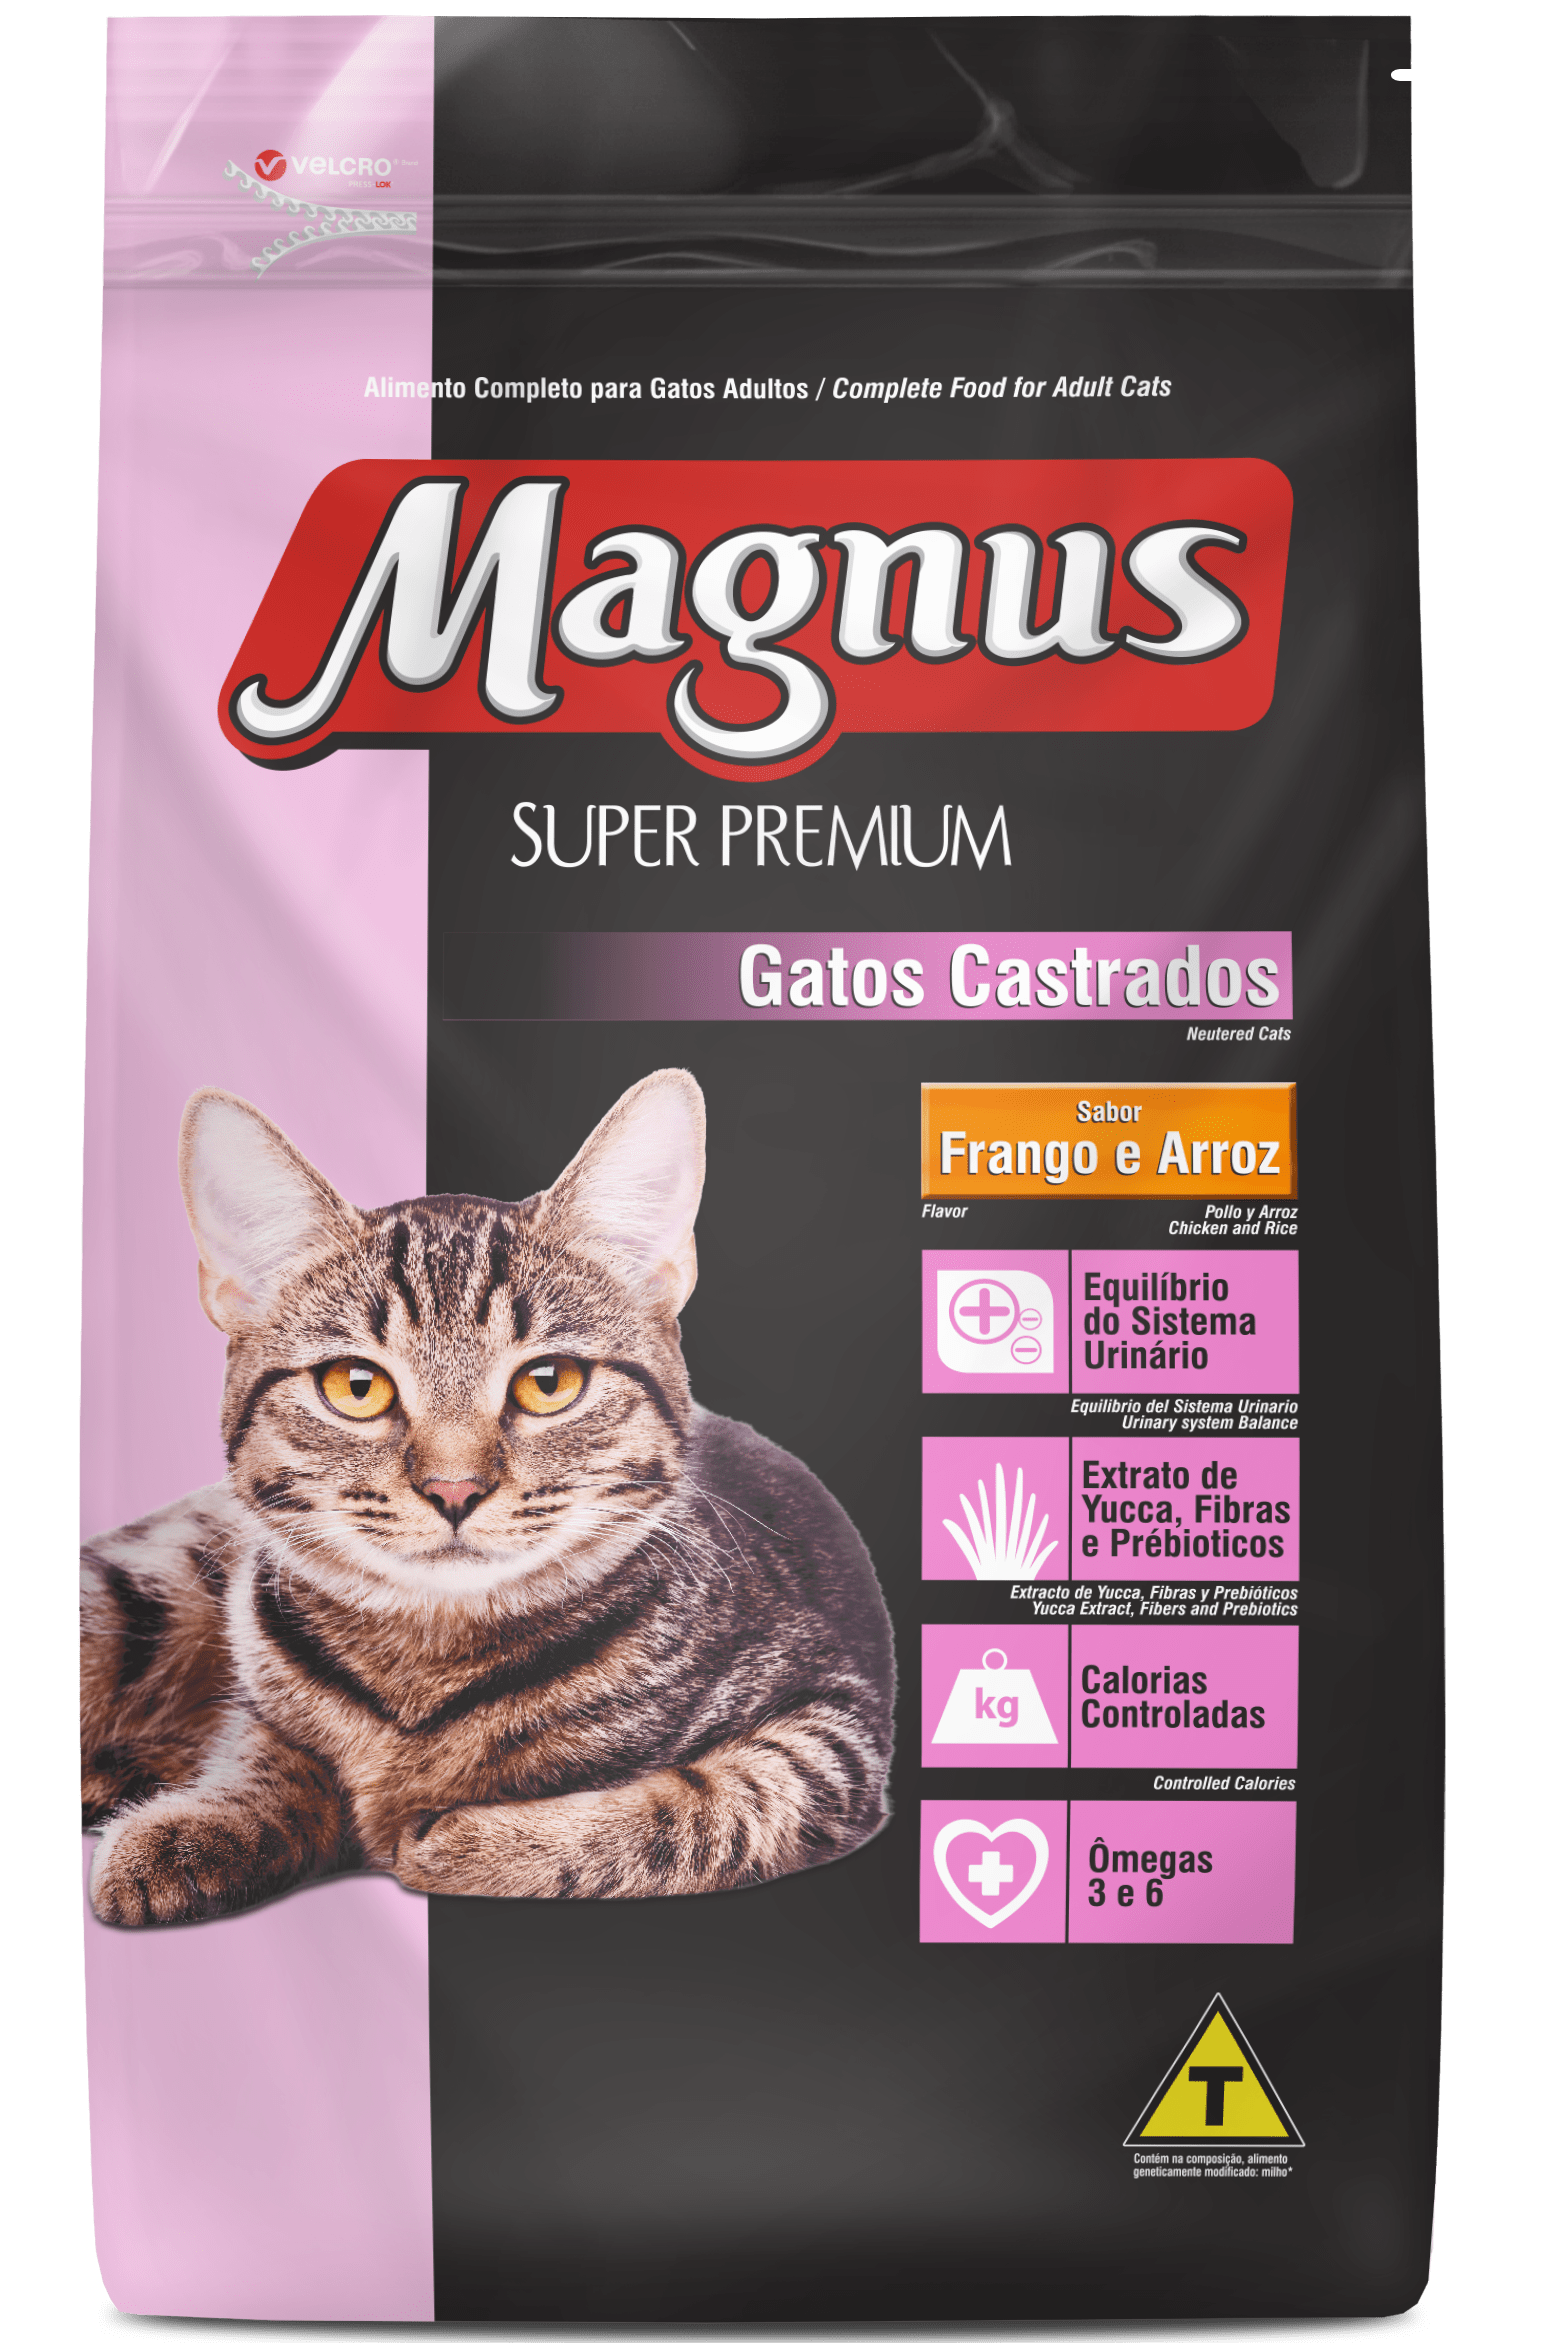 Magnus Super Premium Gatos Castrados Sabor Frango e Arroz